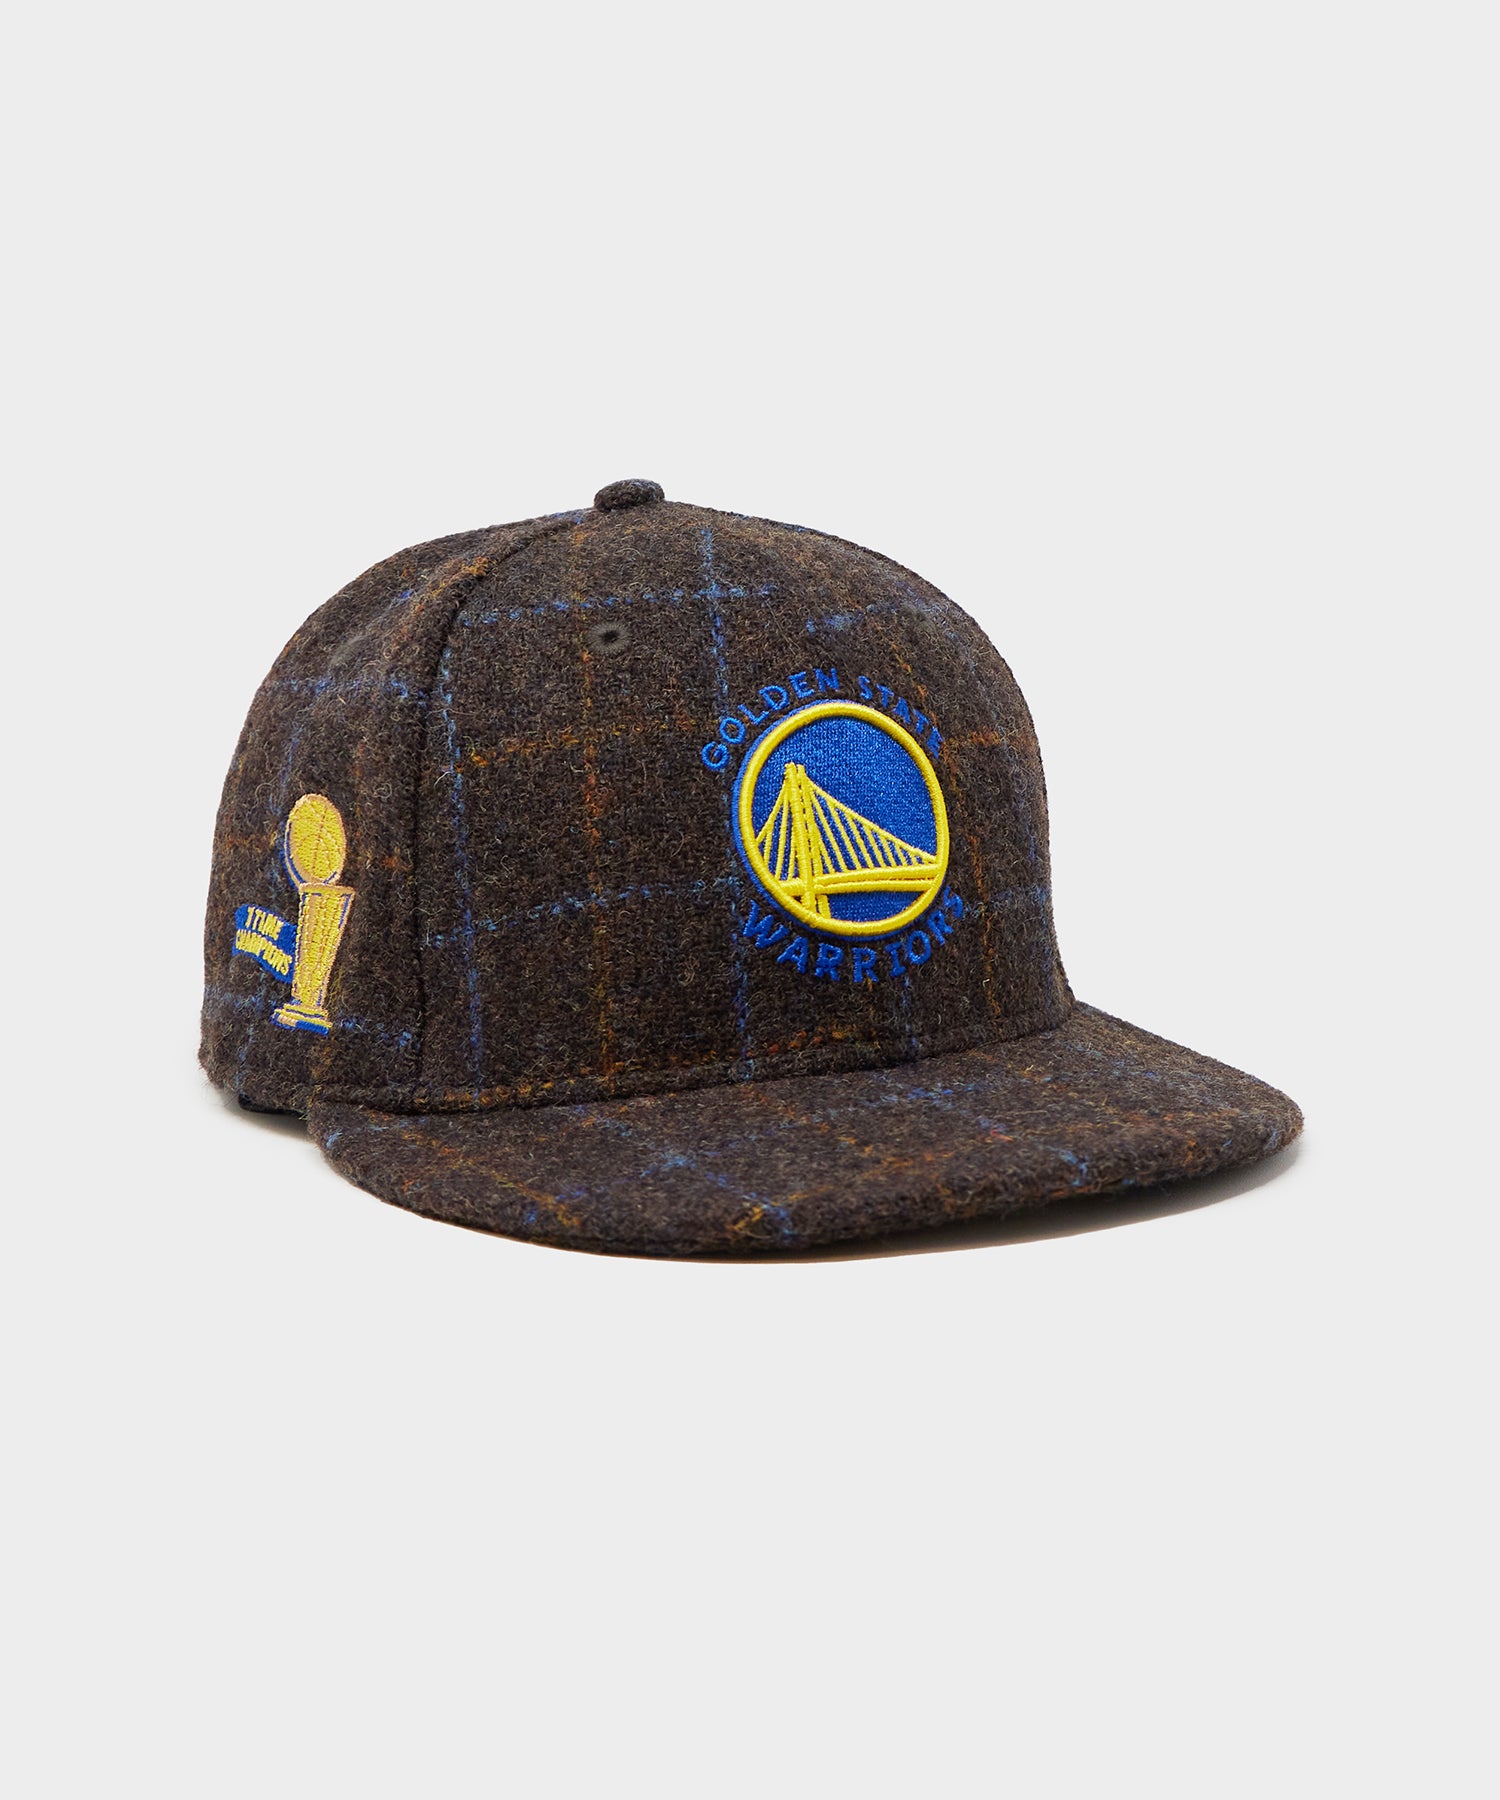 Todd Snyder x NBA Golden State Warriors New Era Hat